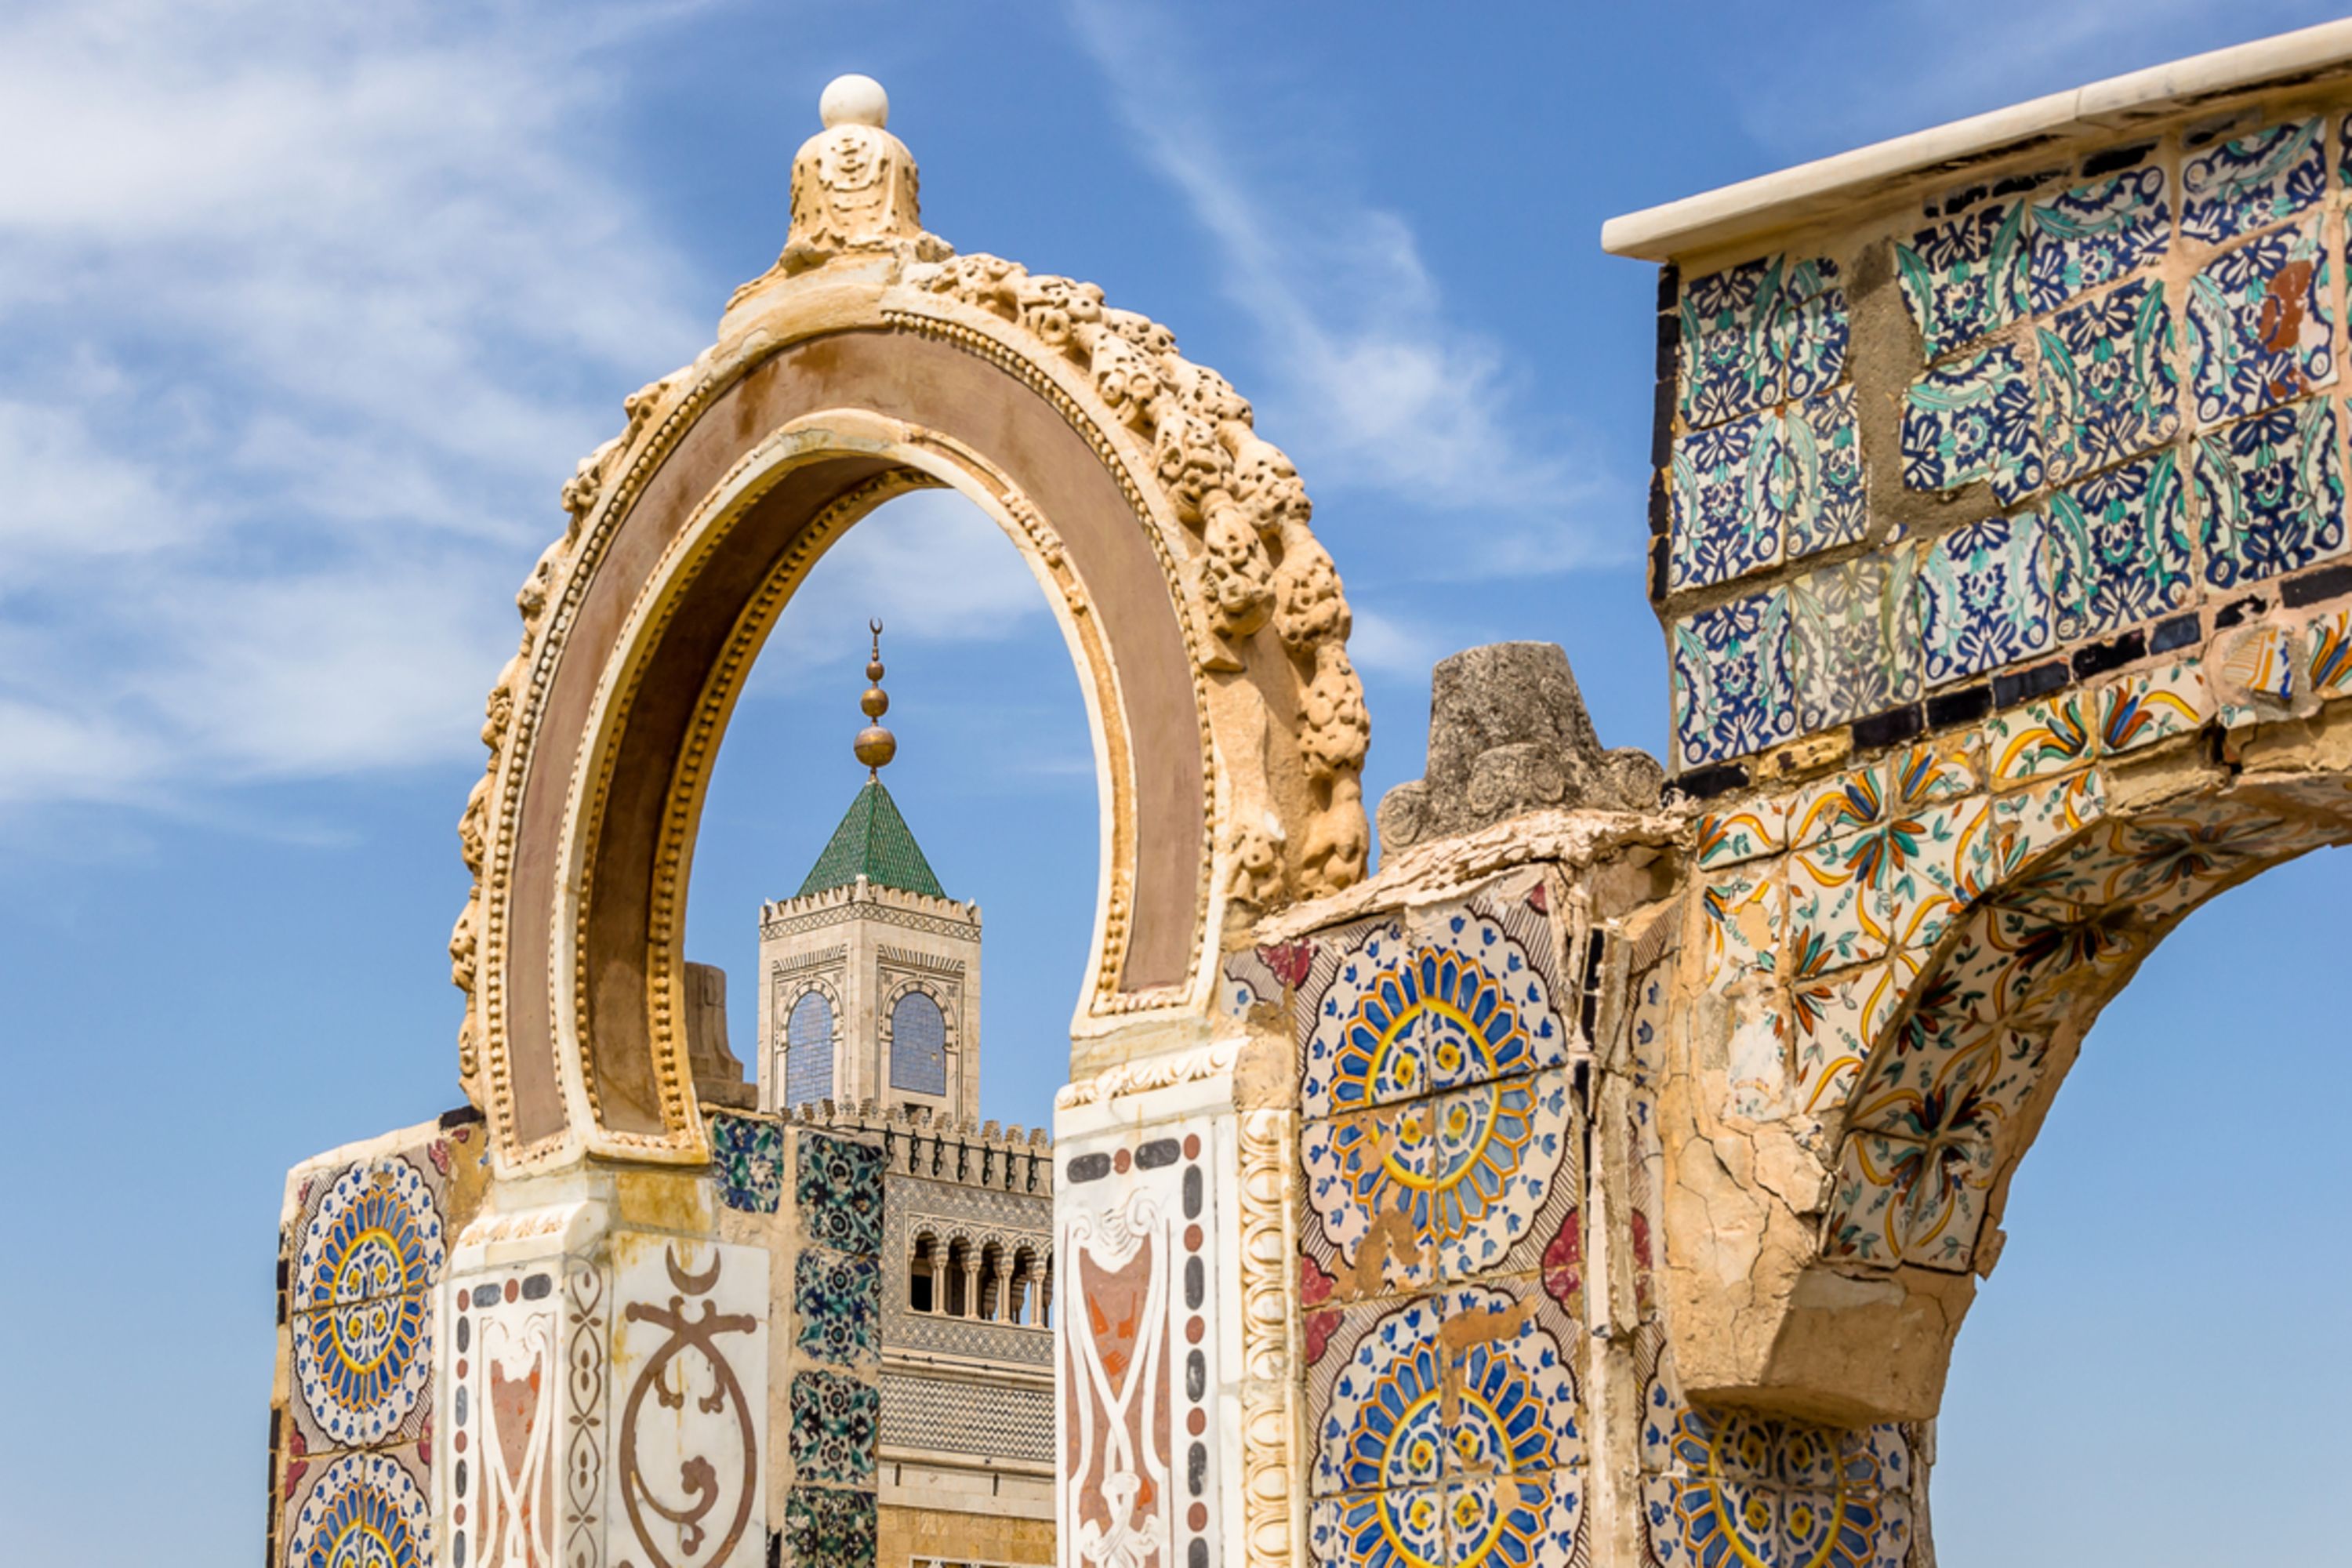 تمتلك تونس العربية حضارةً عريقة وتاريخًا مُشرّف يتجسّد في تلك المعالم الموجودة في كل أنحاء البلاد، فهي تعتبر من المدن الرائدة والمزدهرة في قطاع السياحة العربية